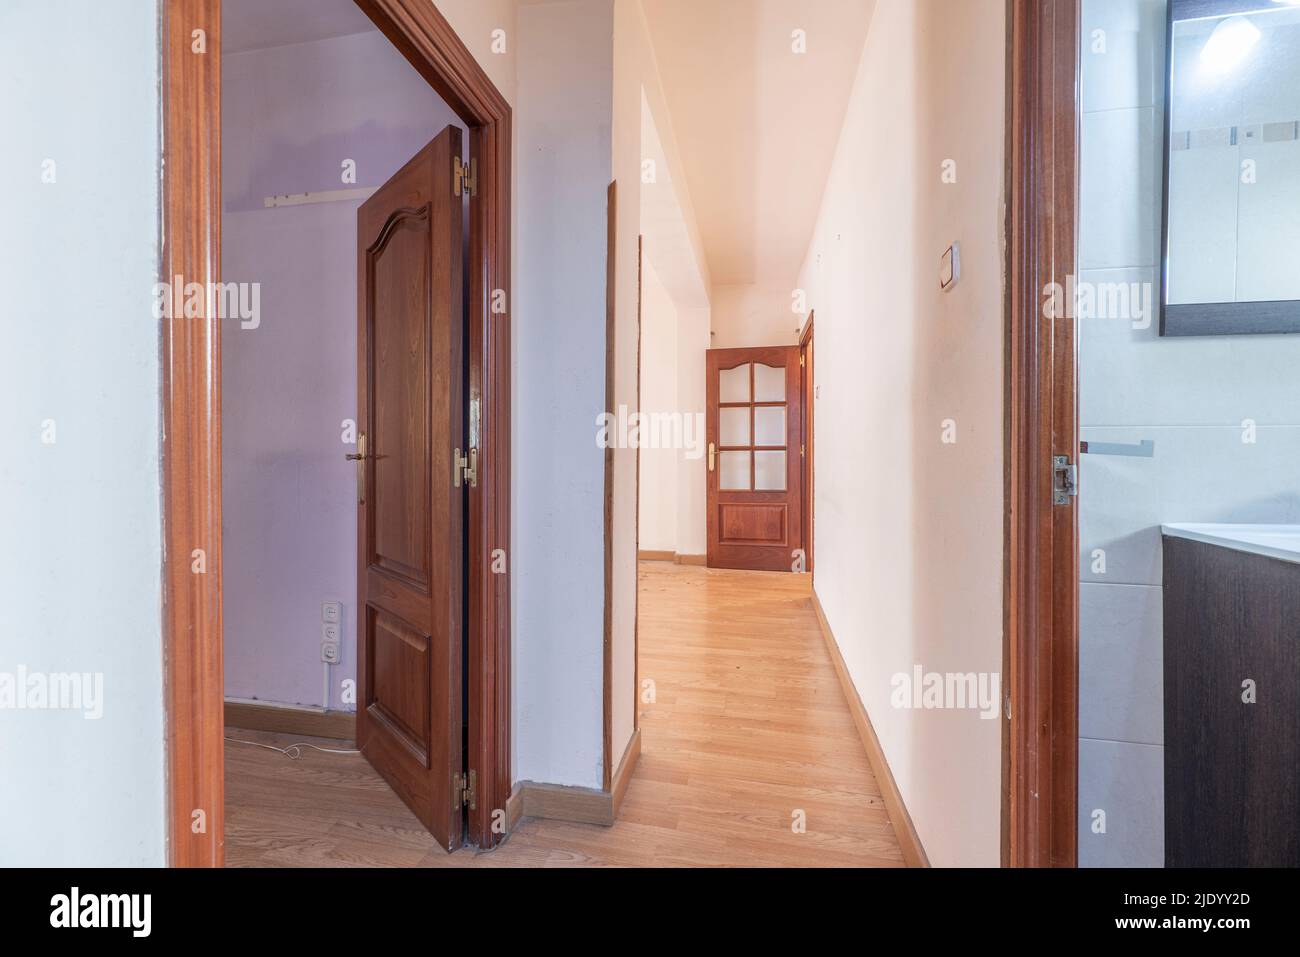 Verteilergang eines Hauses mit hellem Eichenboden und rötlichen Holzschreinerarbeiten an den Türen Stockfoto